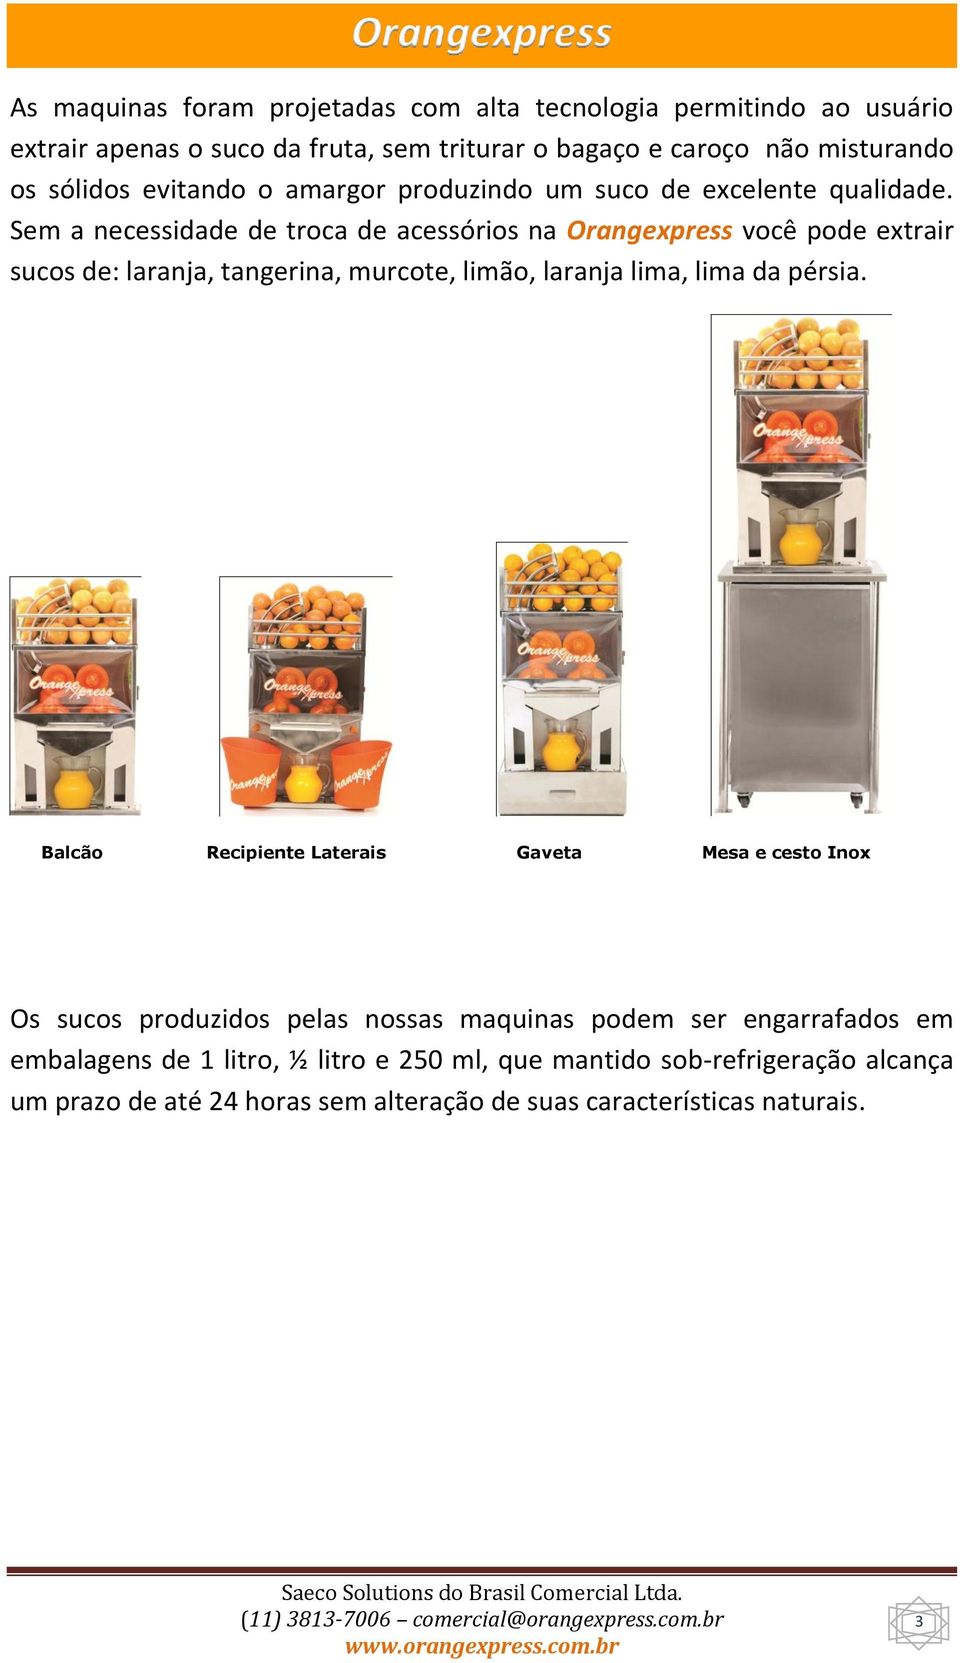 Sem a necessidade de troca de acessórios na Orangexpress você pode extrair sucos de: laranja, tangerina, murcote, limão, laranja lima, lima da pérsia.